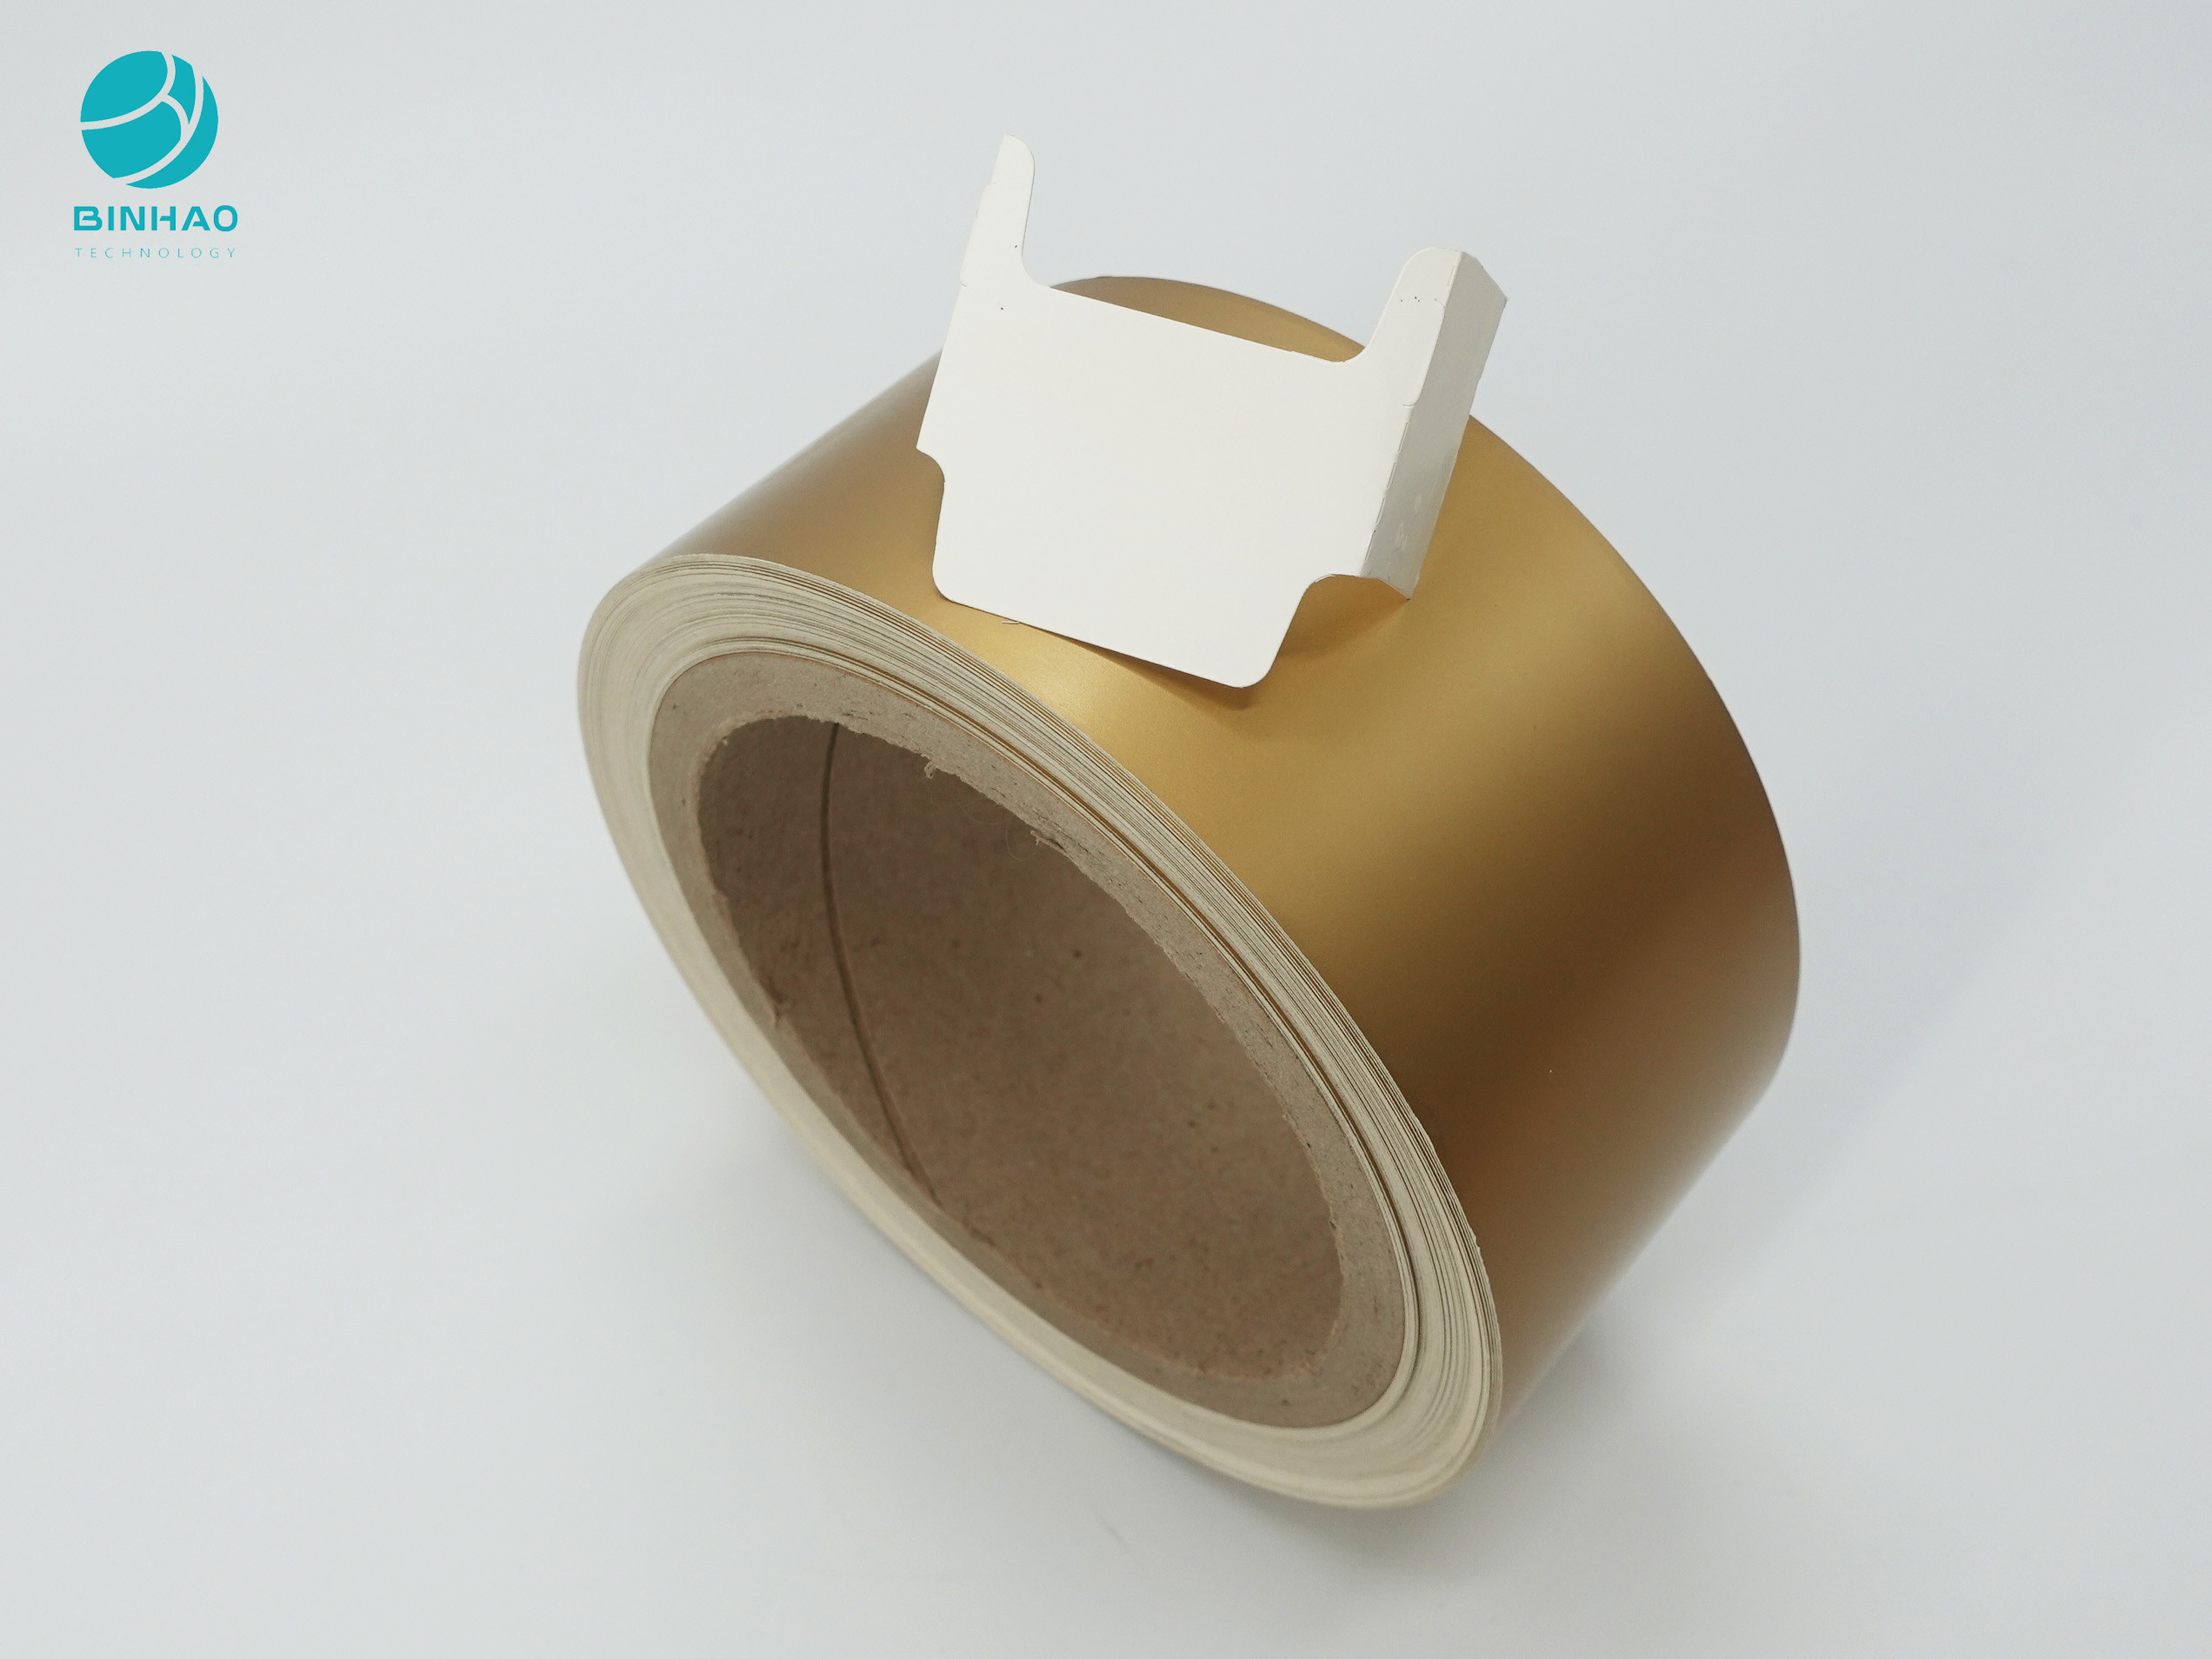 SBS-Sondergröße-Gold beschichtete Pappinneres Rahmen-Papier für Zigaretten-Verpackung